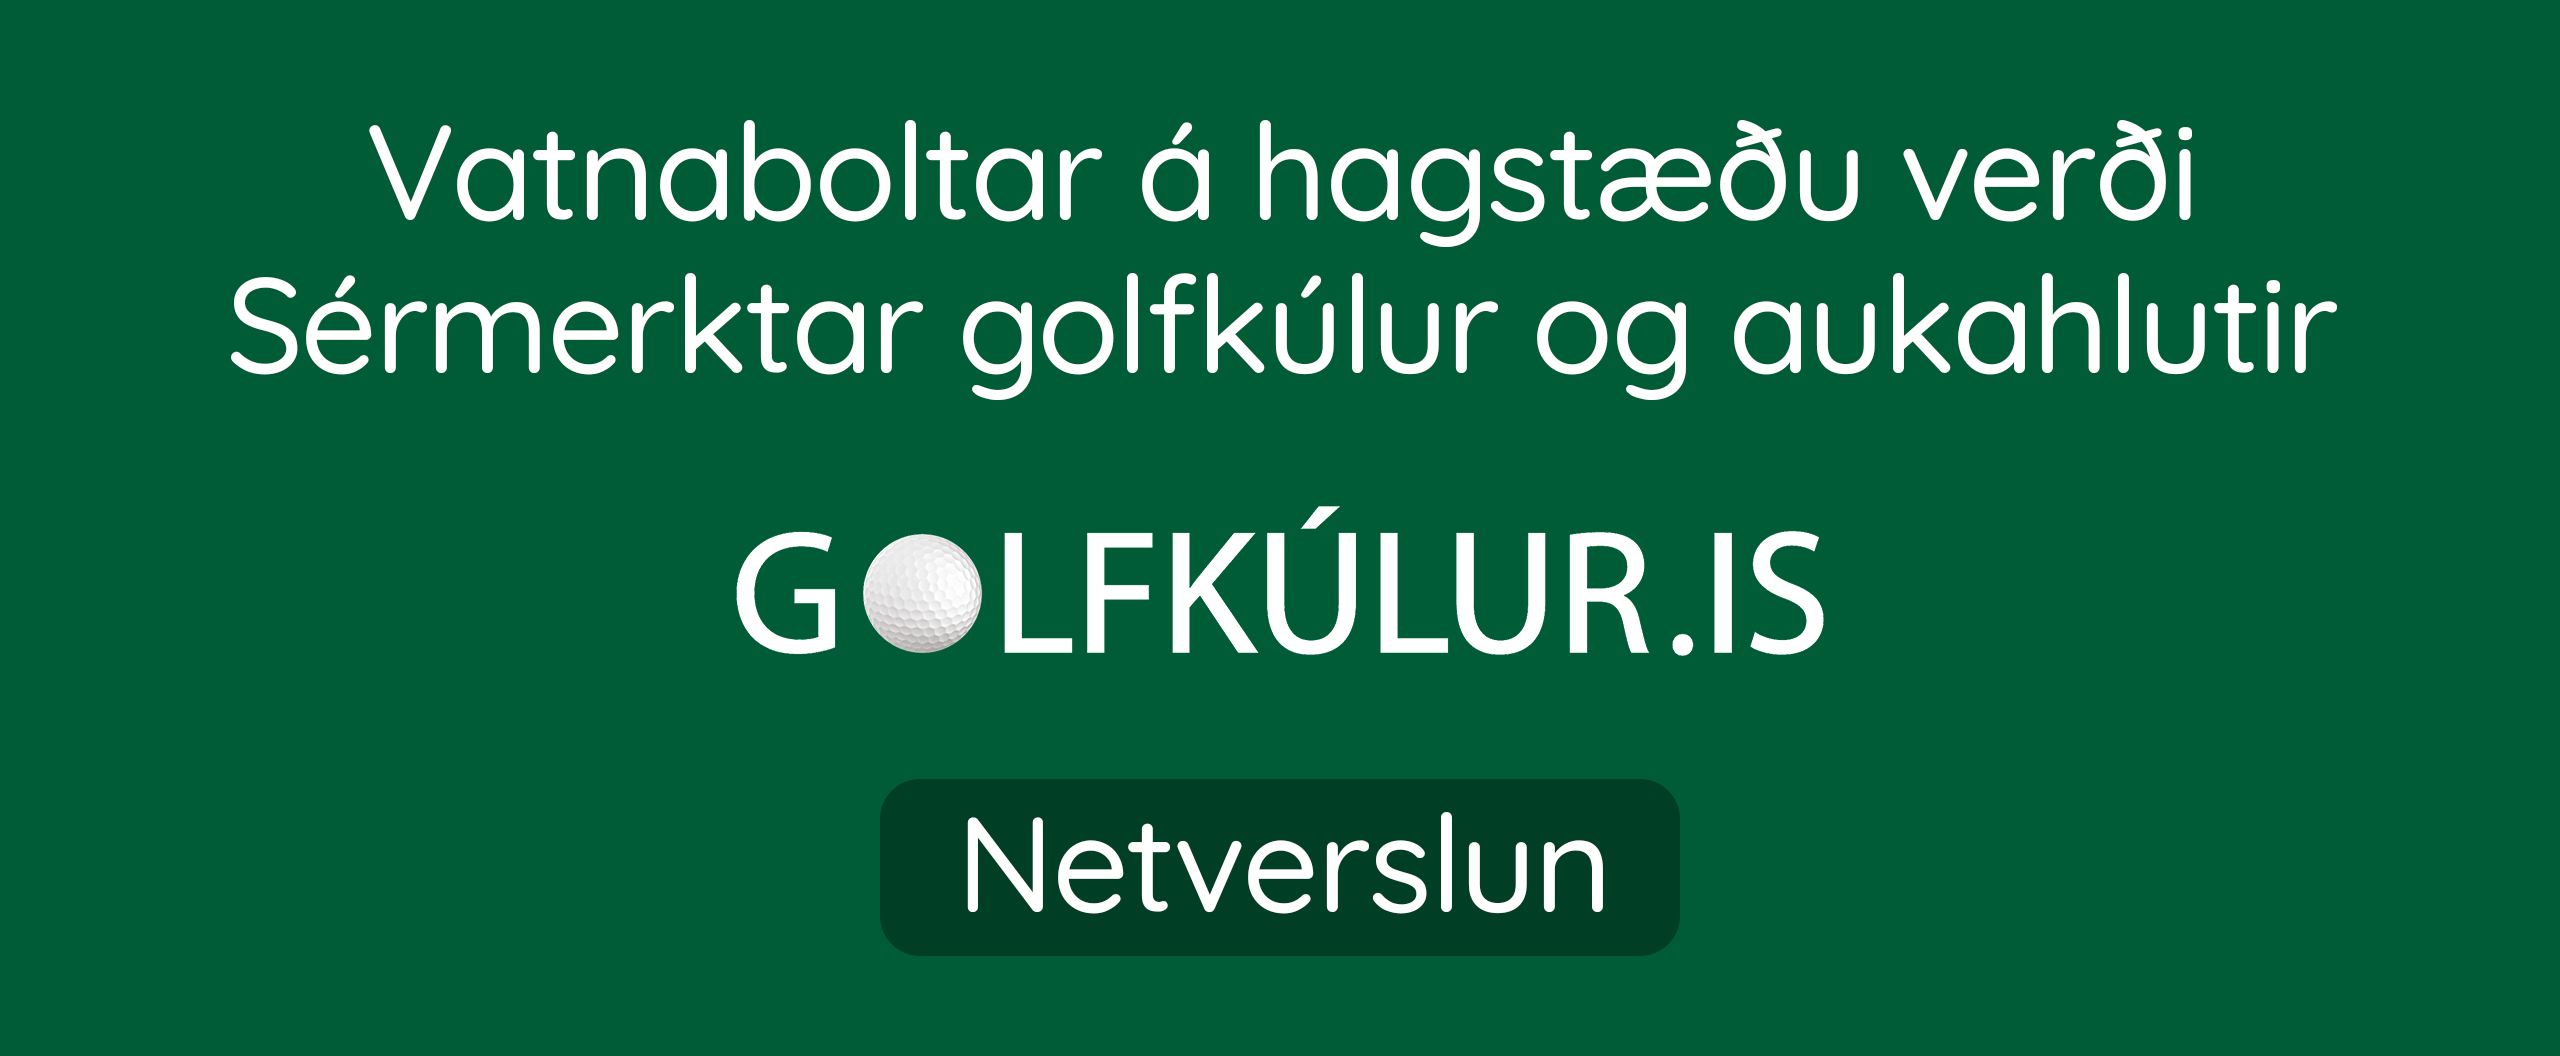 Golfkúlur